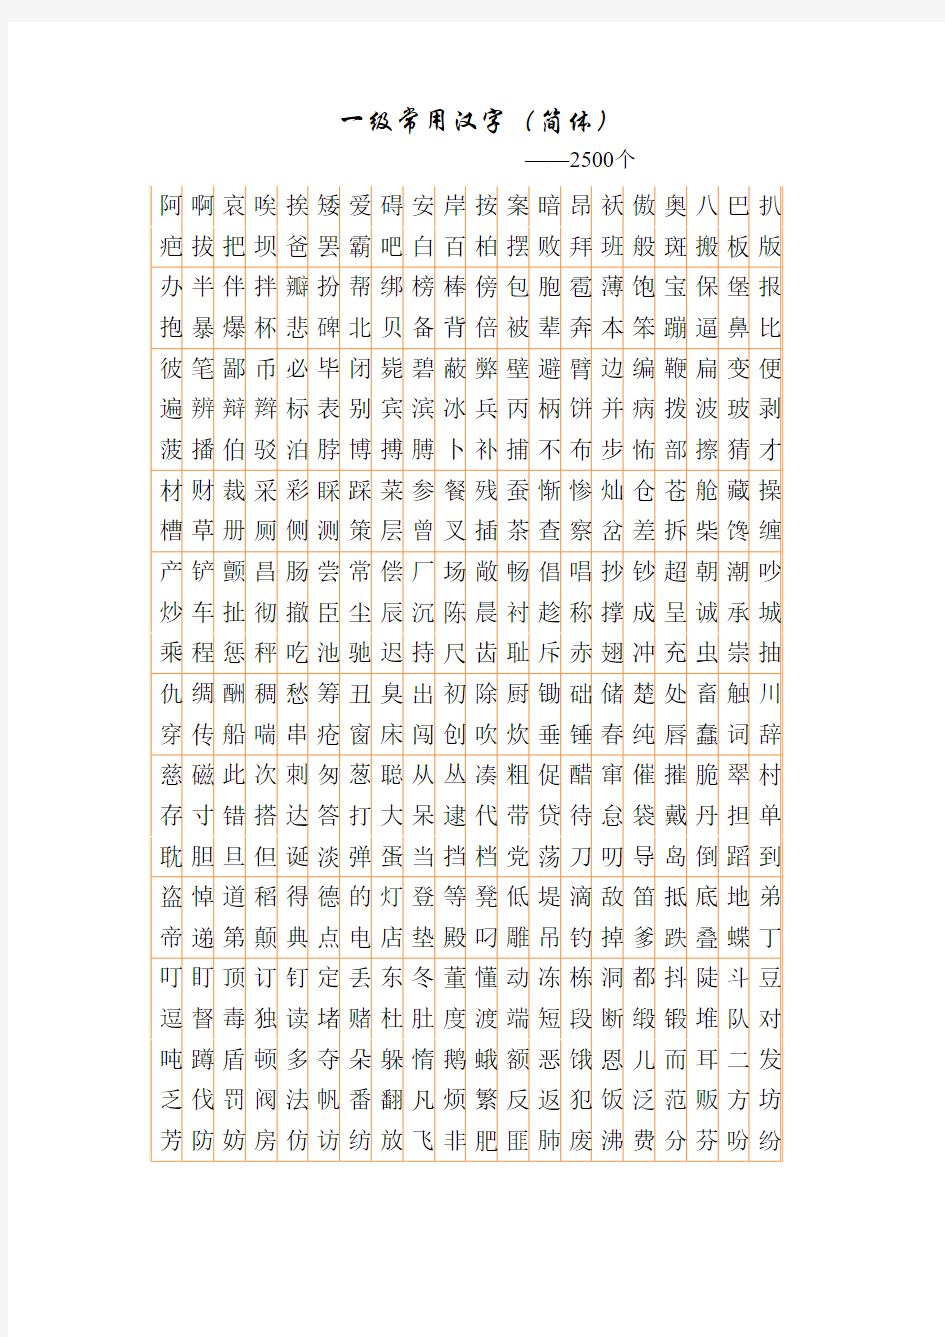 3500个(一、二级)常用汉字简繁及行楷对照表